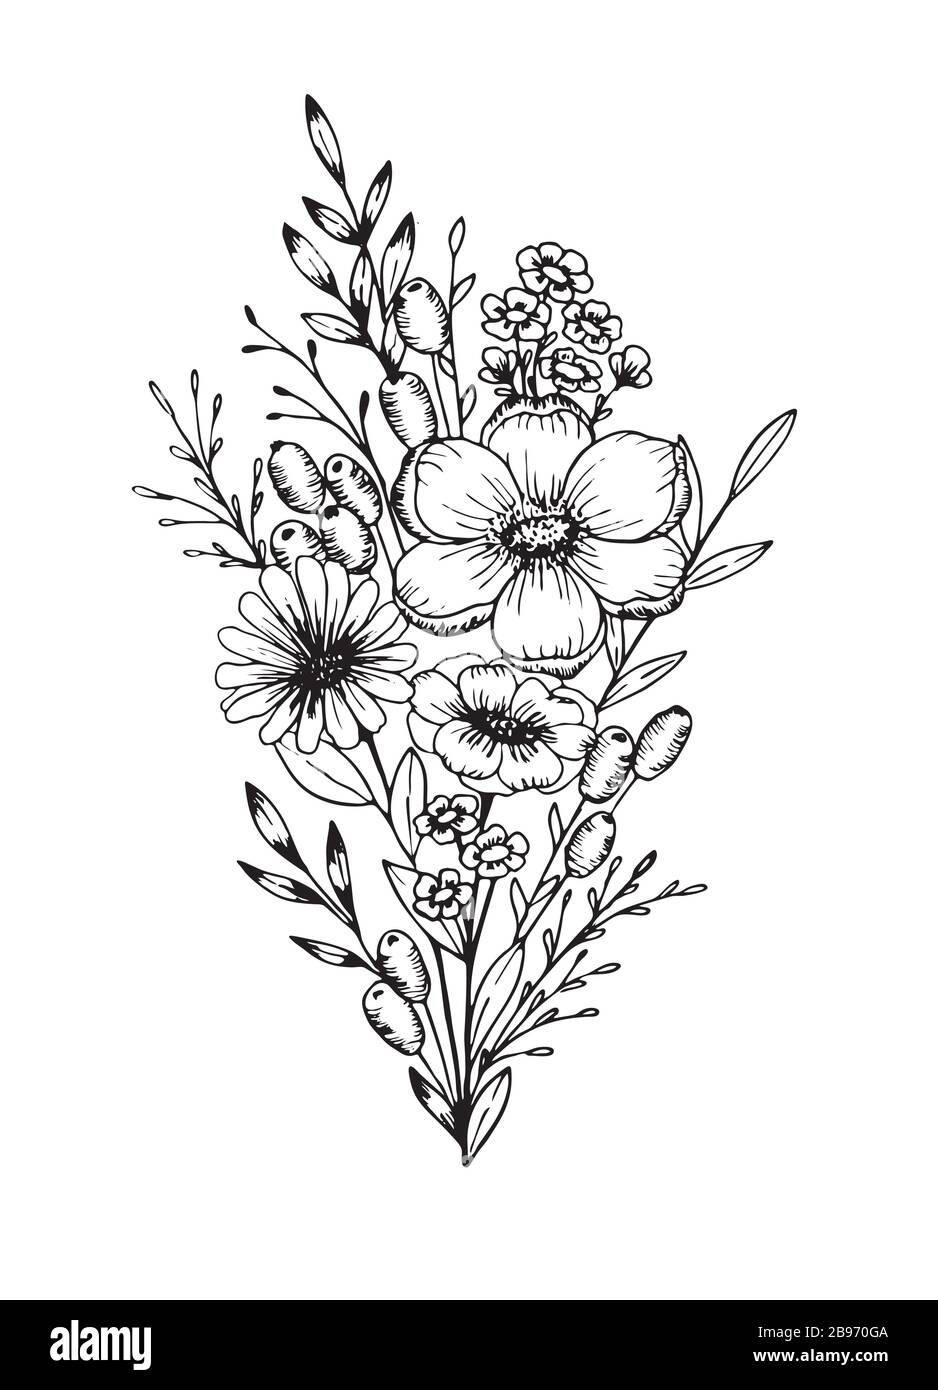 Illustrations botaniques dessinées à la main. Modèle floristique dessiné à la main, cadre avec fleurs délicates, branches, plantes. Illustration de Vecteur